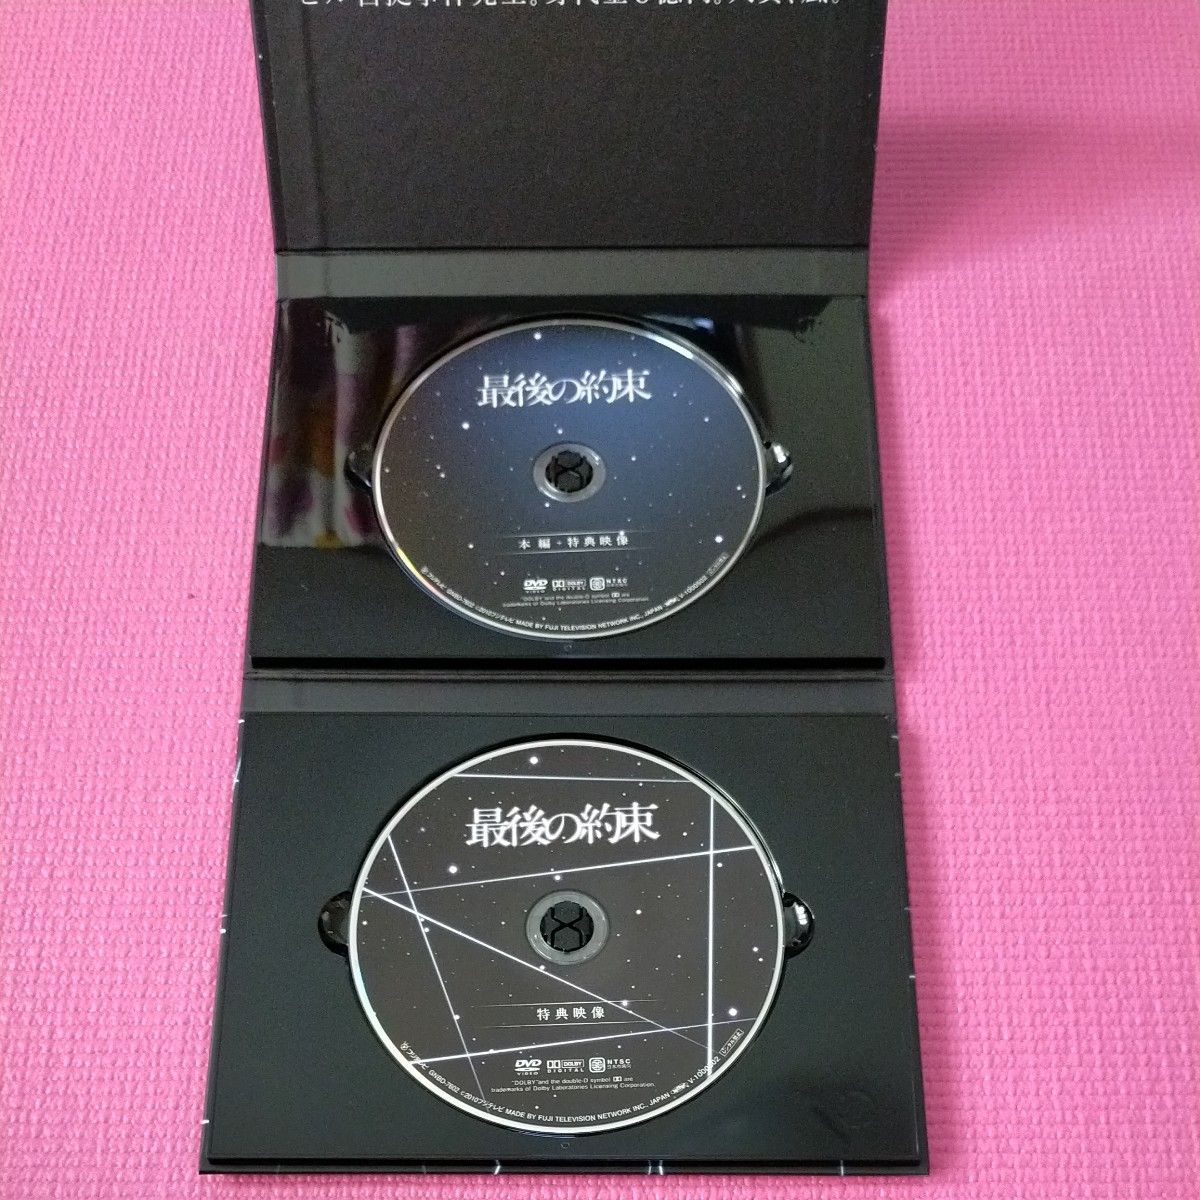 嵐主演  最後の約束 DVD 初回限定盤BOX